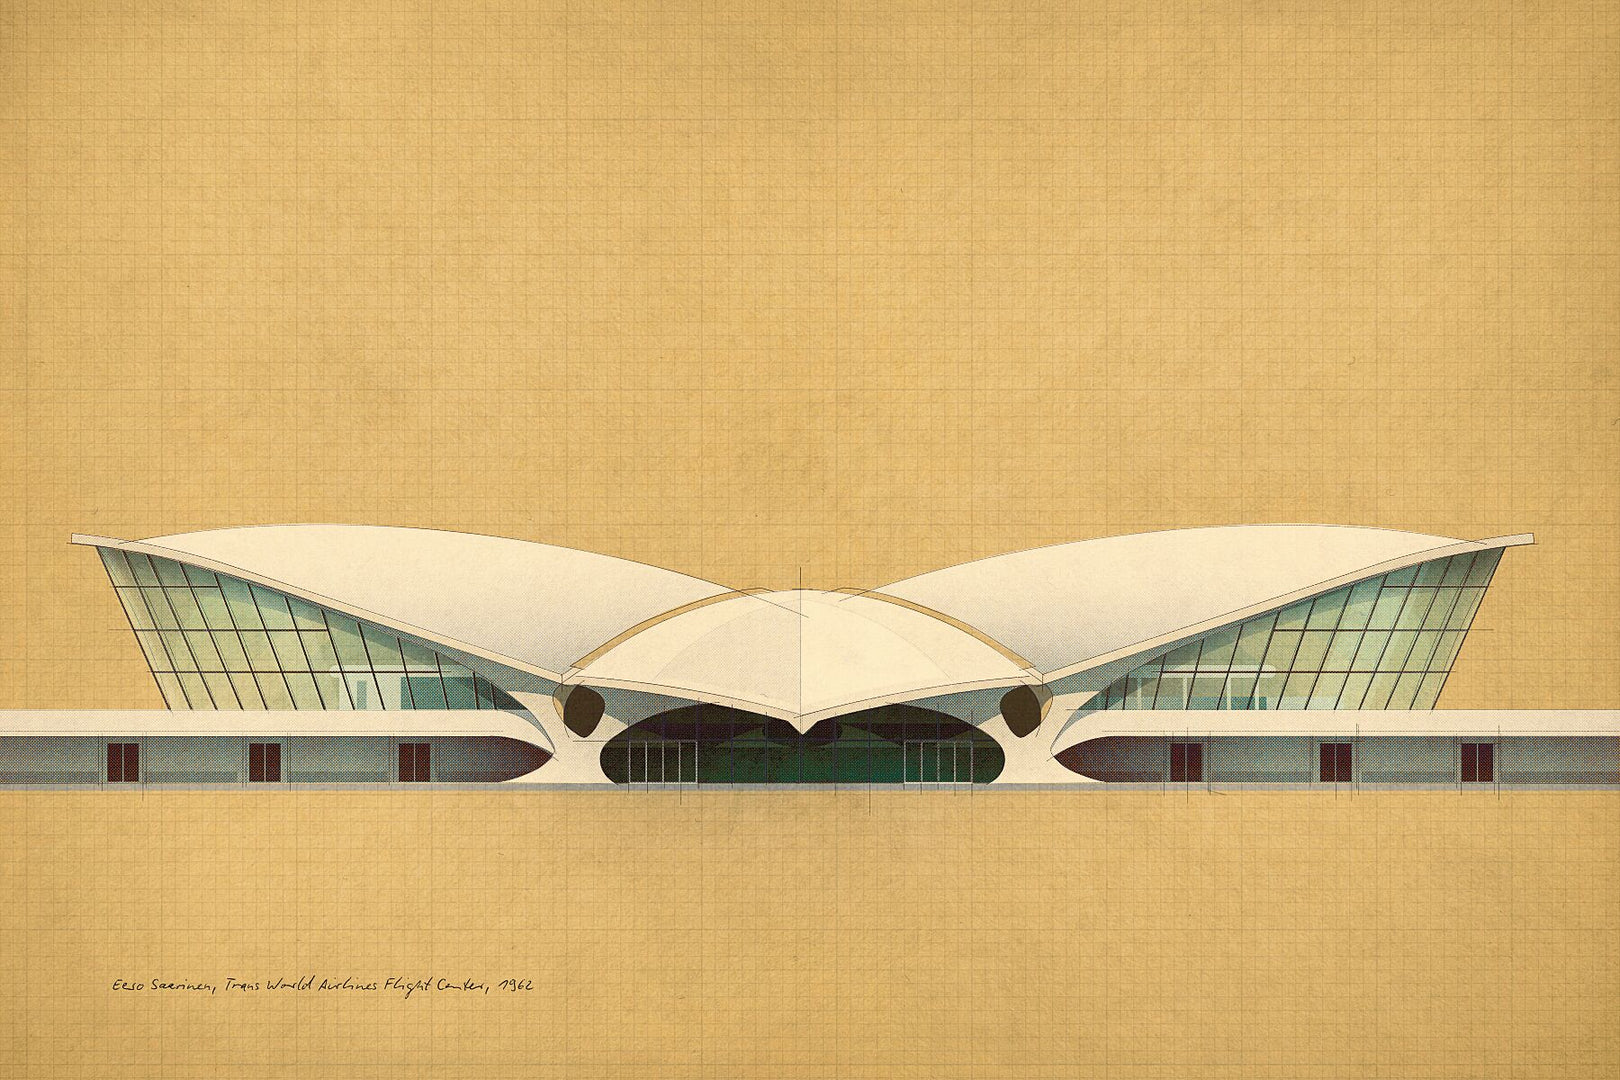 Eero Saarinen, Trans World Airlines Flight Center, 1962